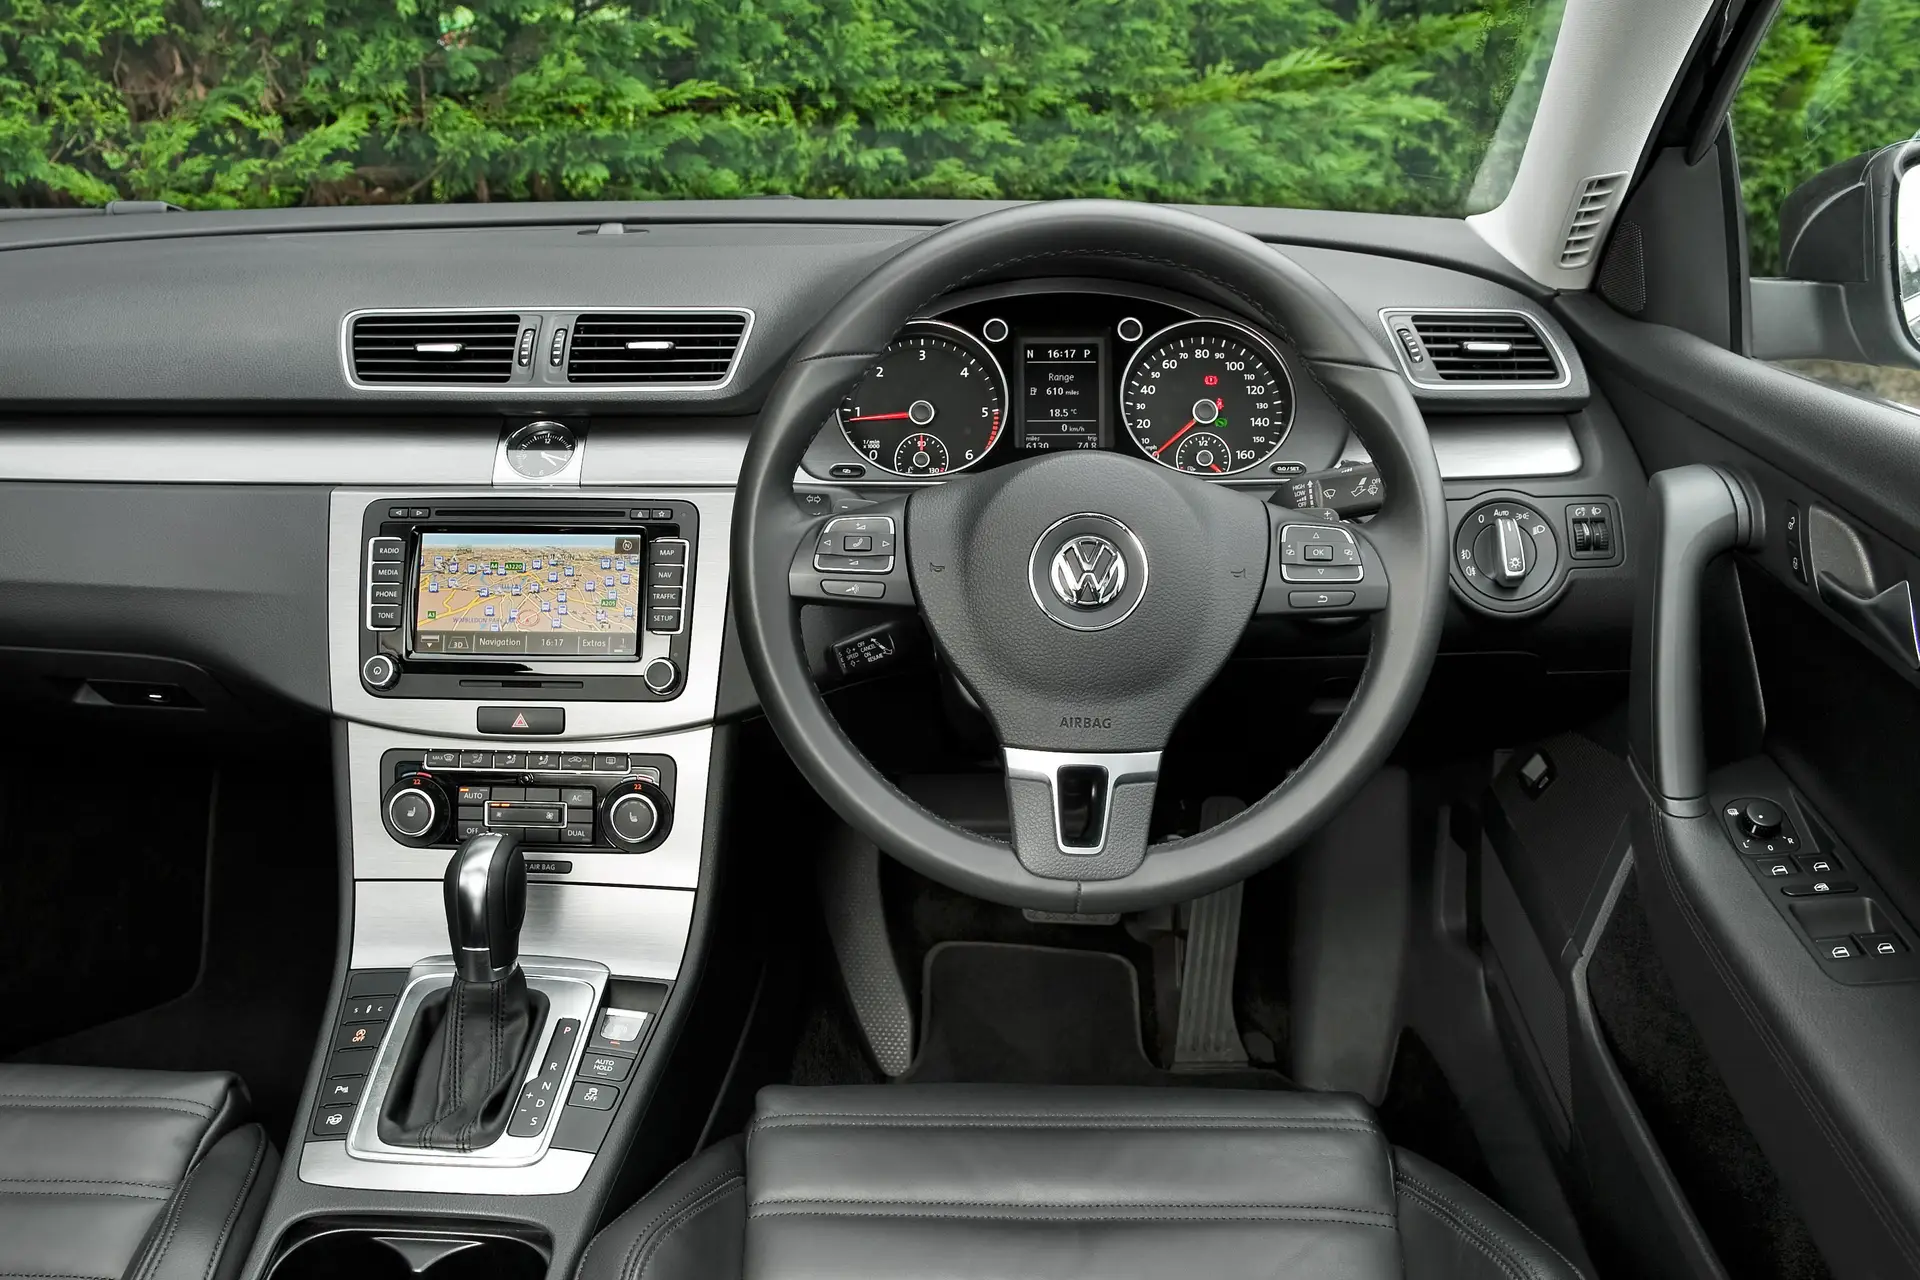 Volkswagen Passat (2011-2015) Review: interior close up photo of the Volkswagen Passat dashboard